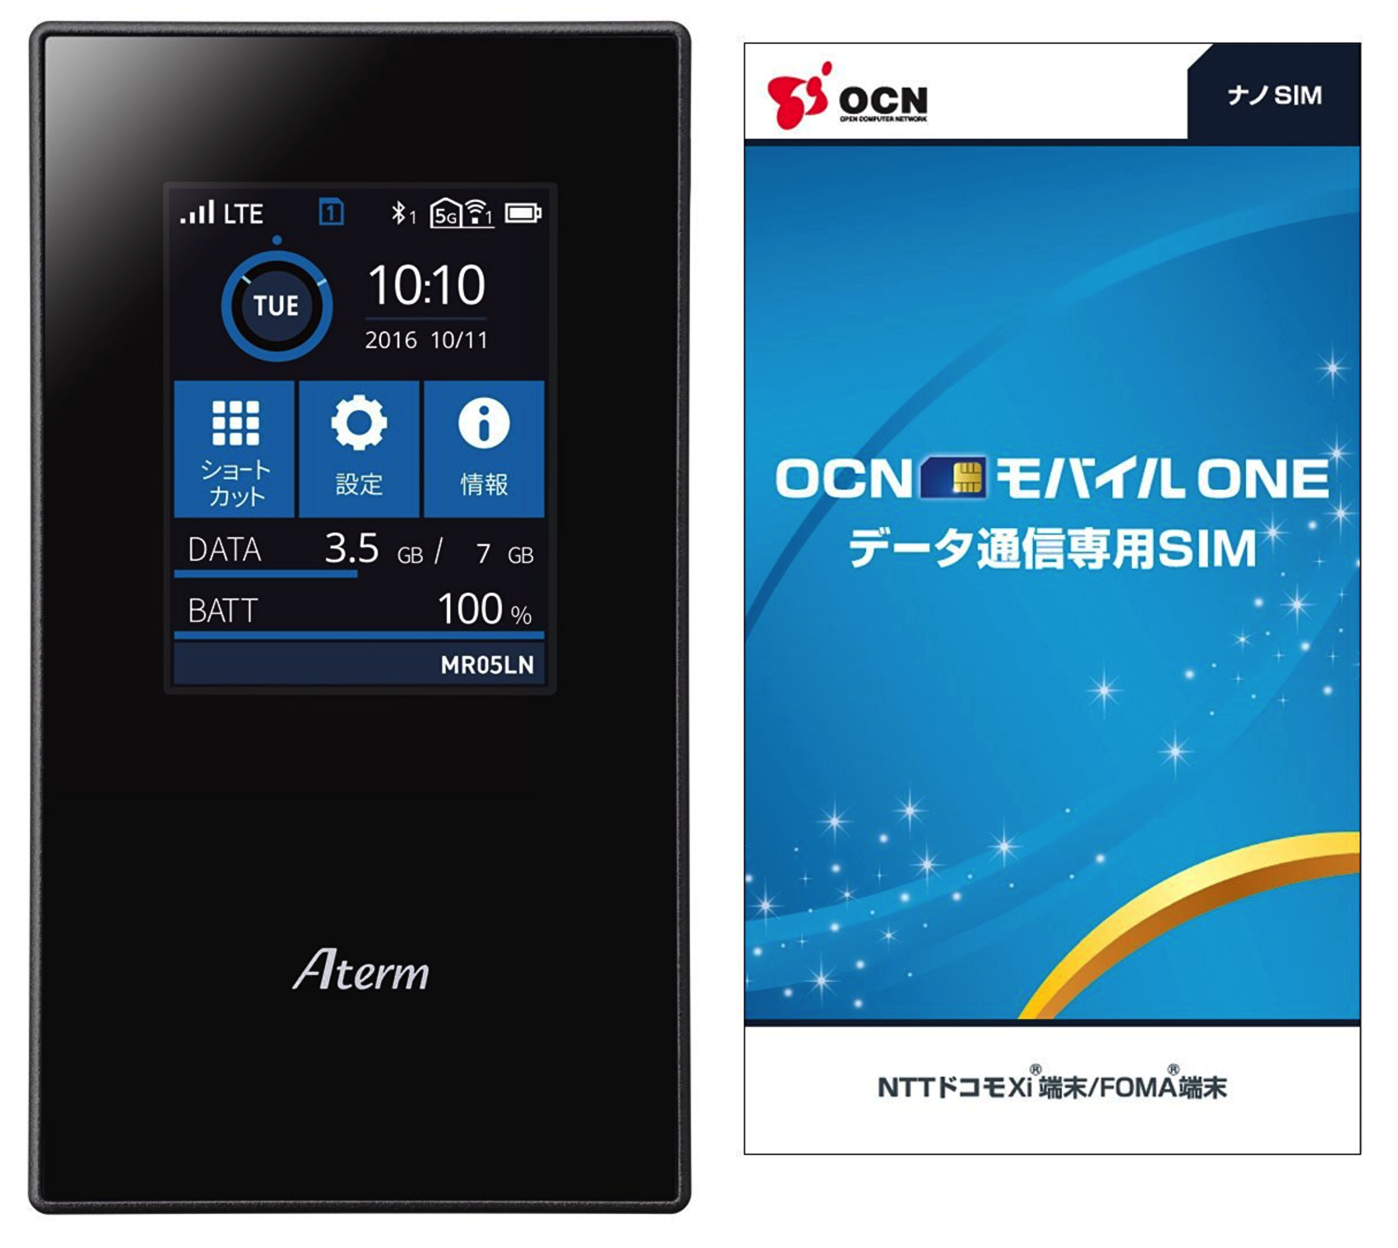 [NEC]約3200円も安くなってるAmazon限定のNEC Aterm MR05LN 3B モバイルルーター (OCN モバイル ONE ナノSIM付) は今が買い？